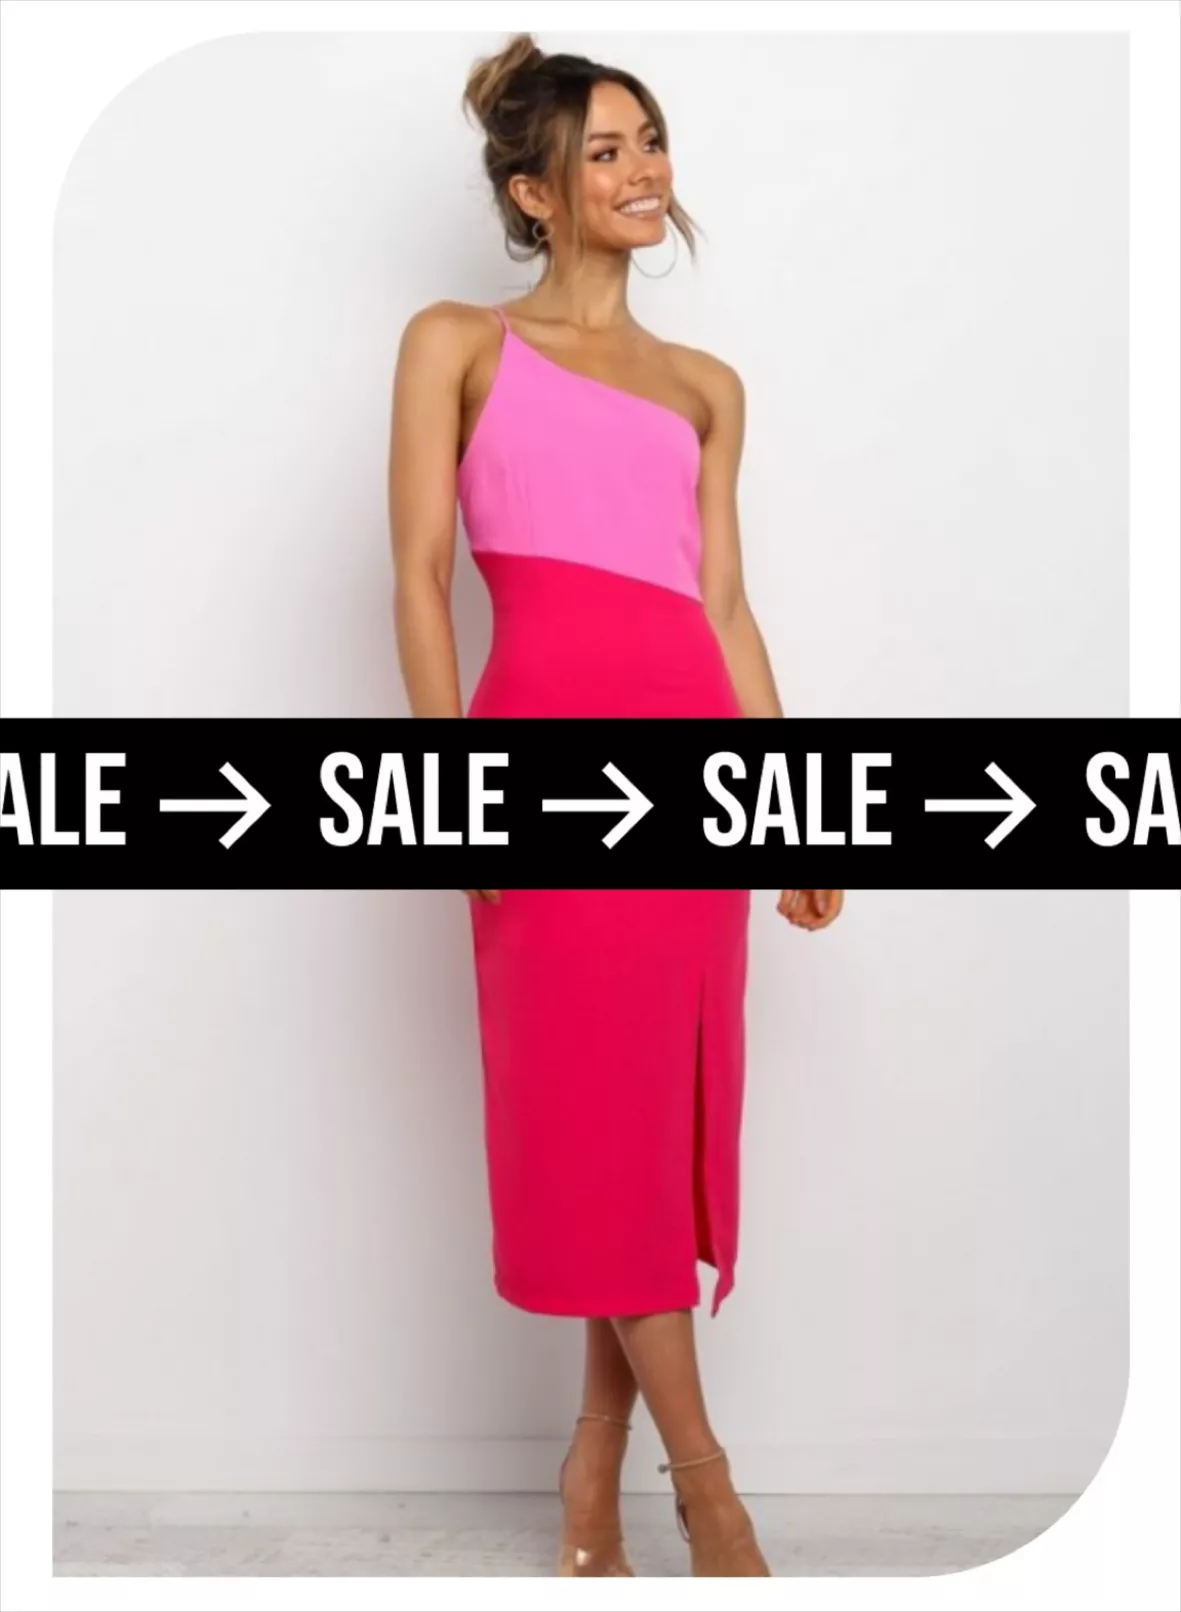 Hot Pink Dresses : Target